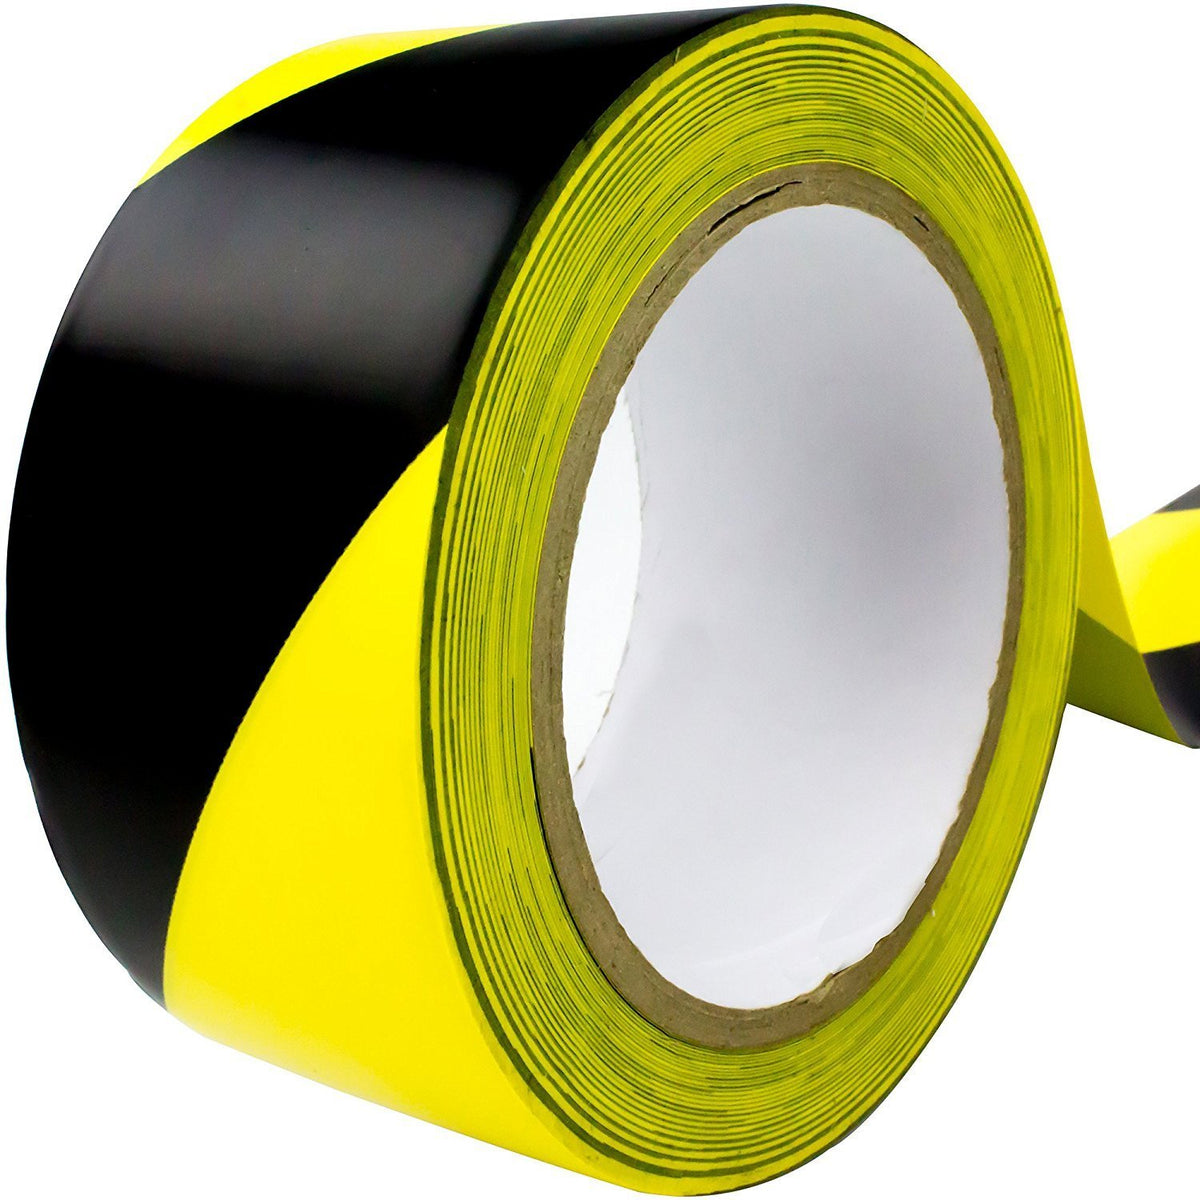 GRAINGER APPROVED 8AVH3 Floor Tape,Yellow,2 inx180 ft,Roll